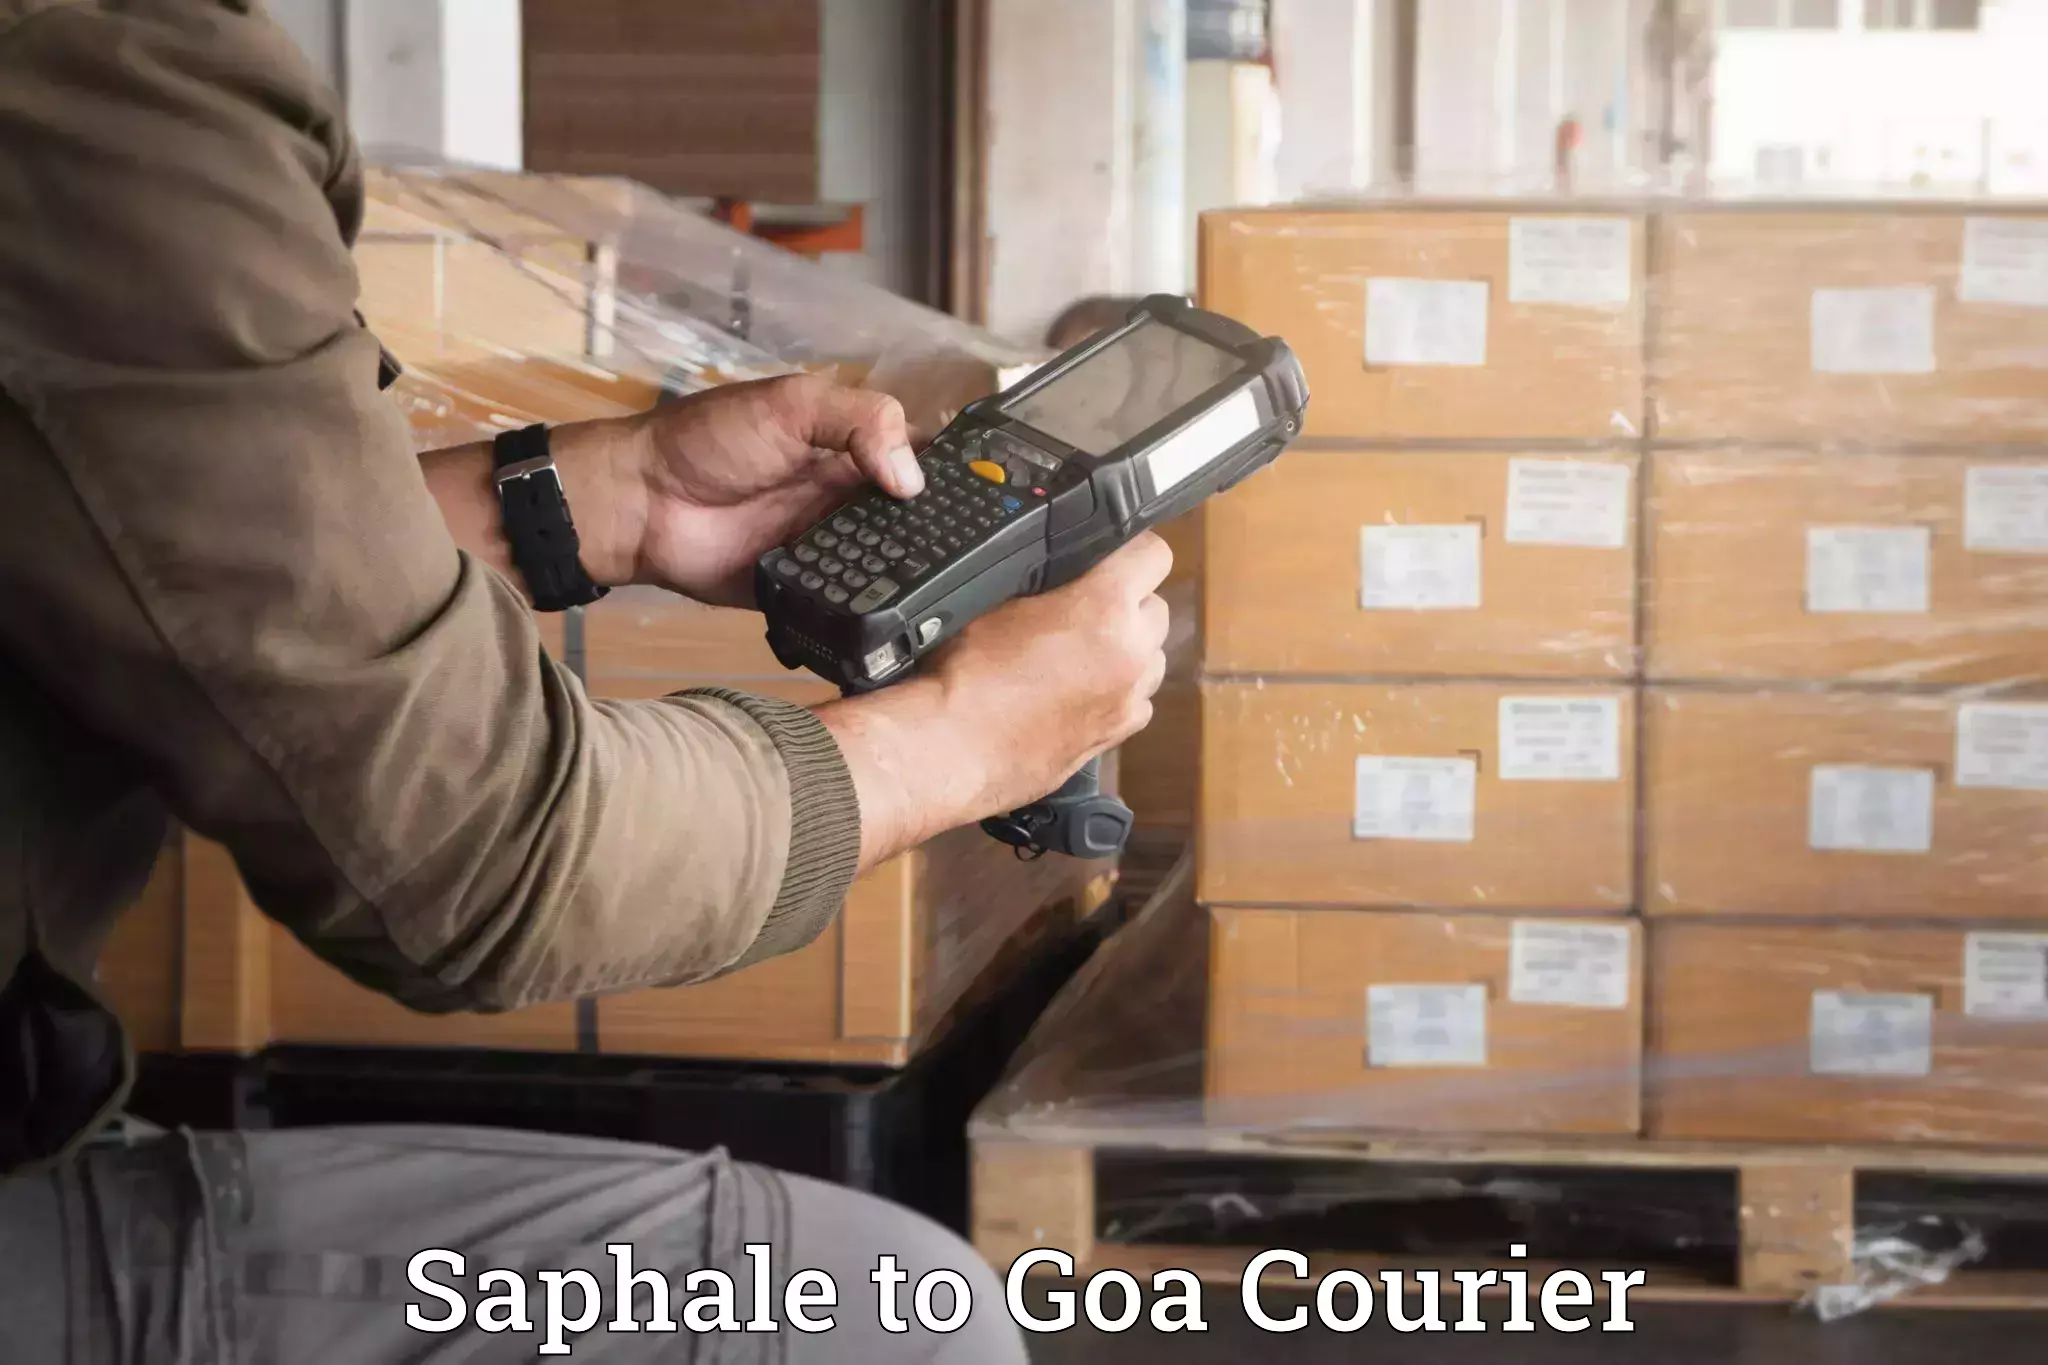 Personalized luggage shipping Saphale to Goa University